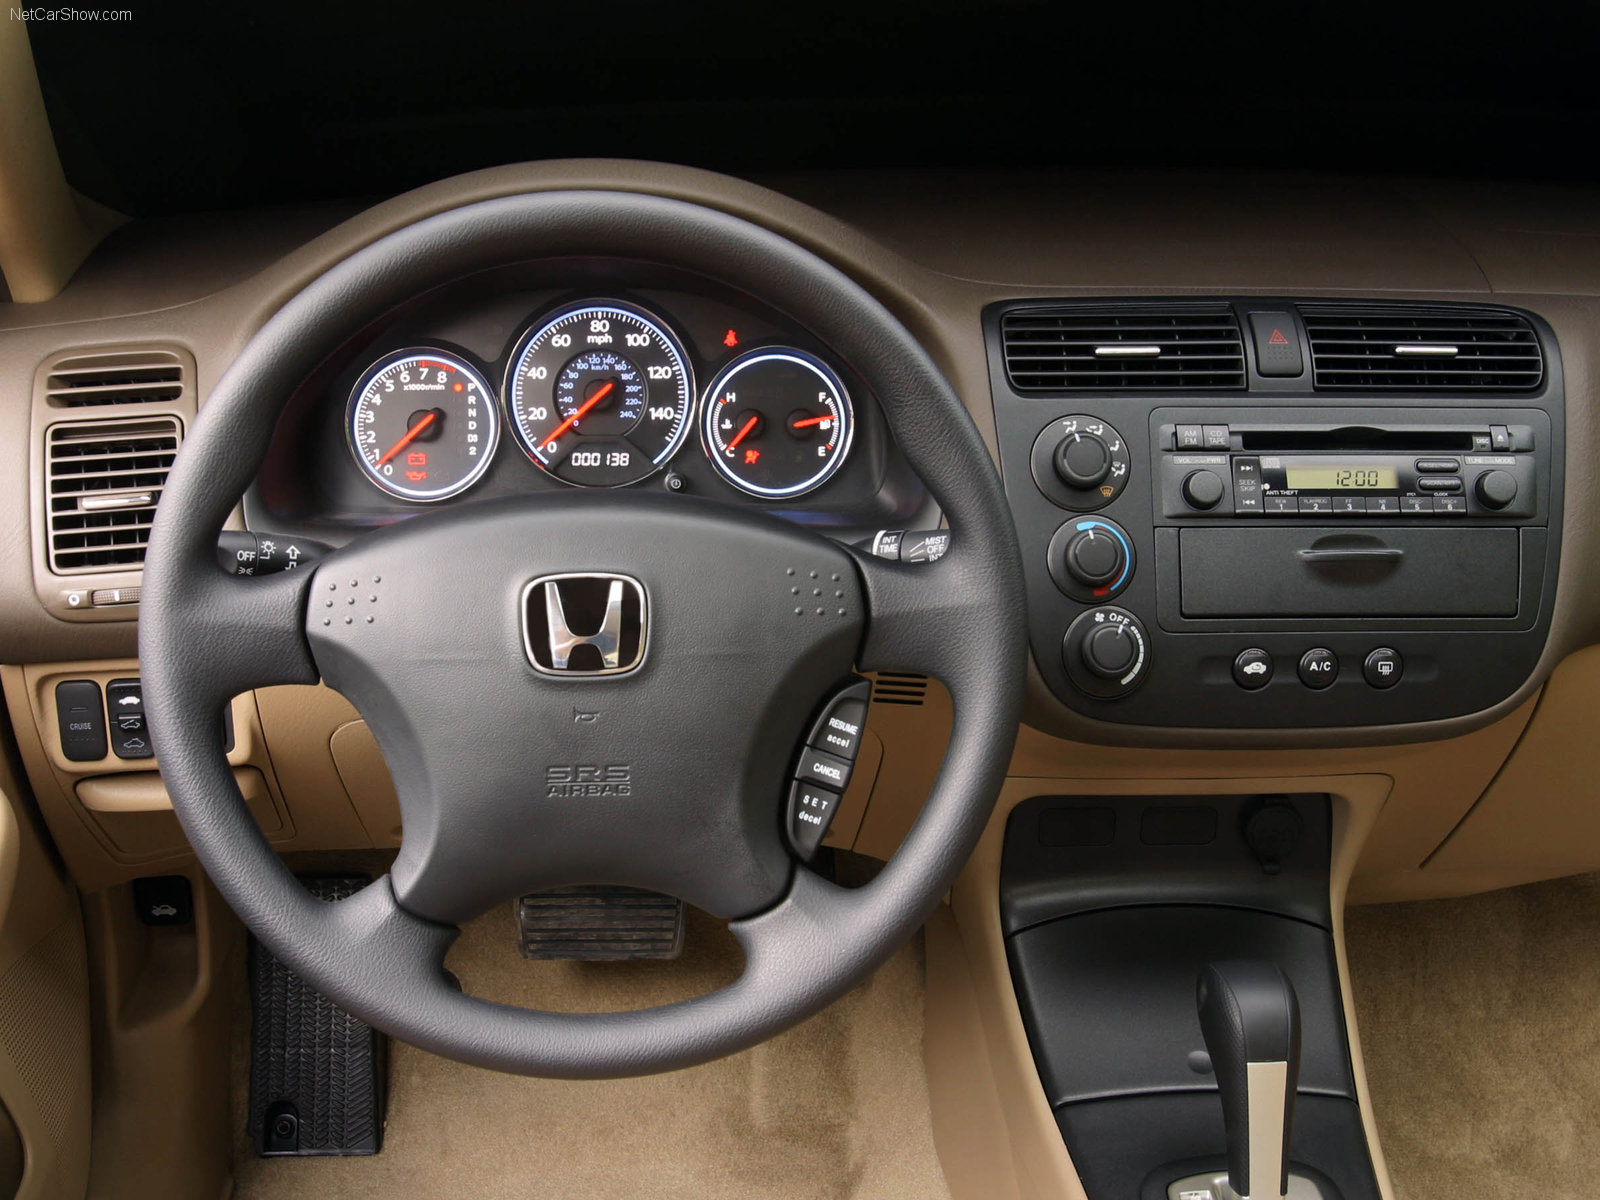 Honda Civic Sedan 2003 Honda-Civic_Sedan-2003-1600-0f